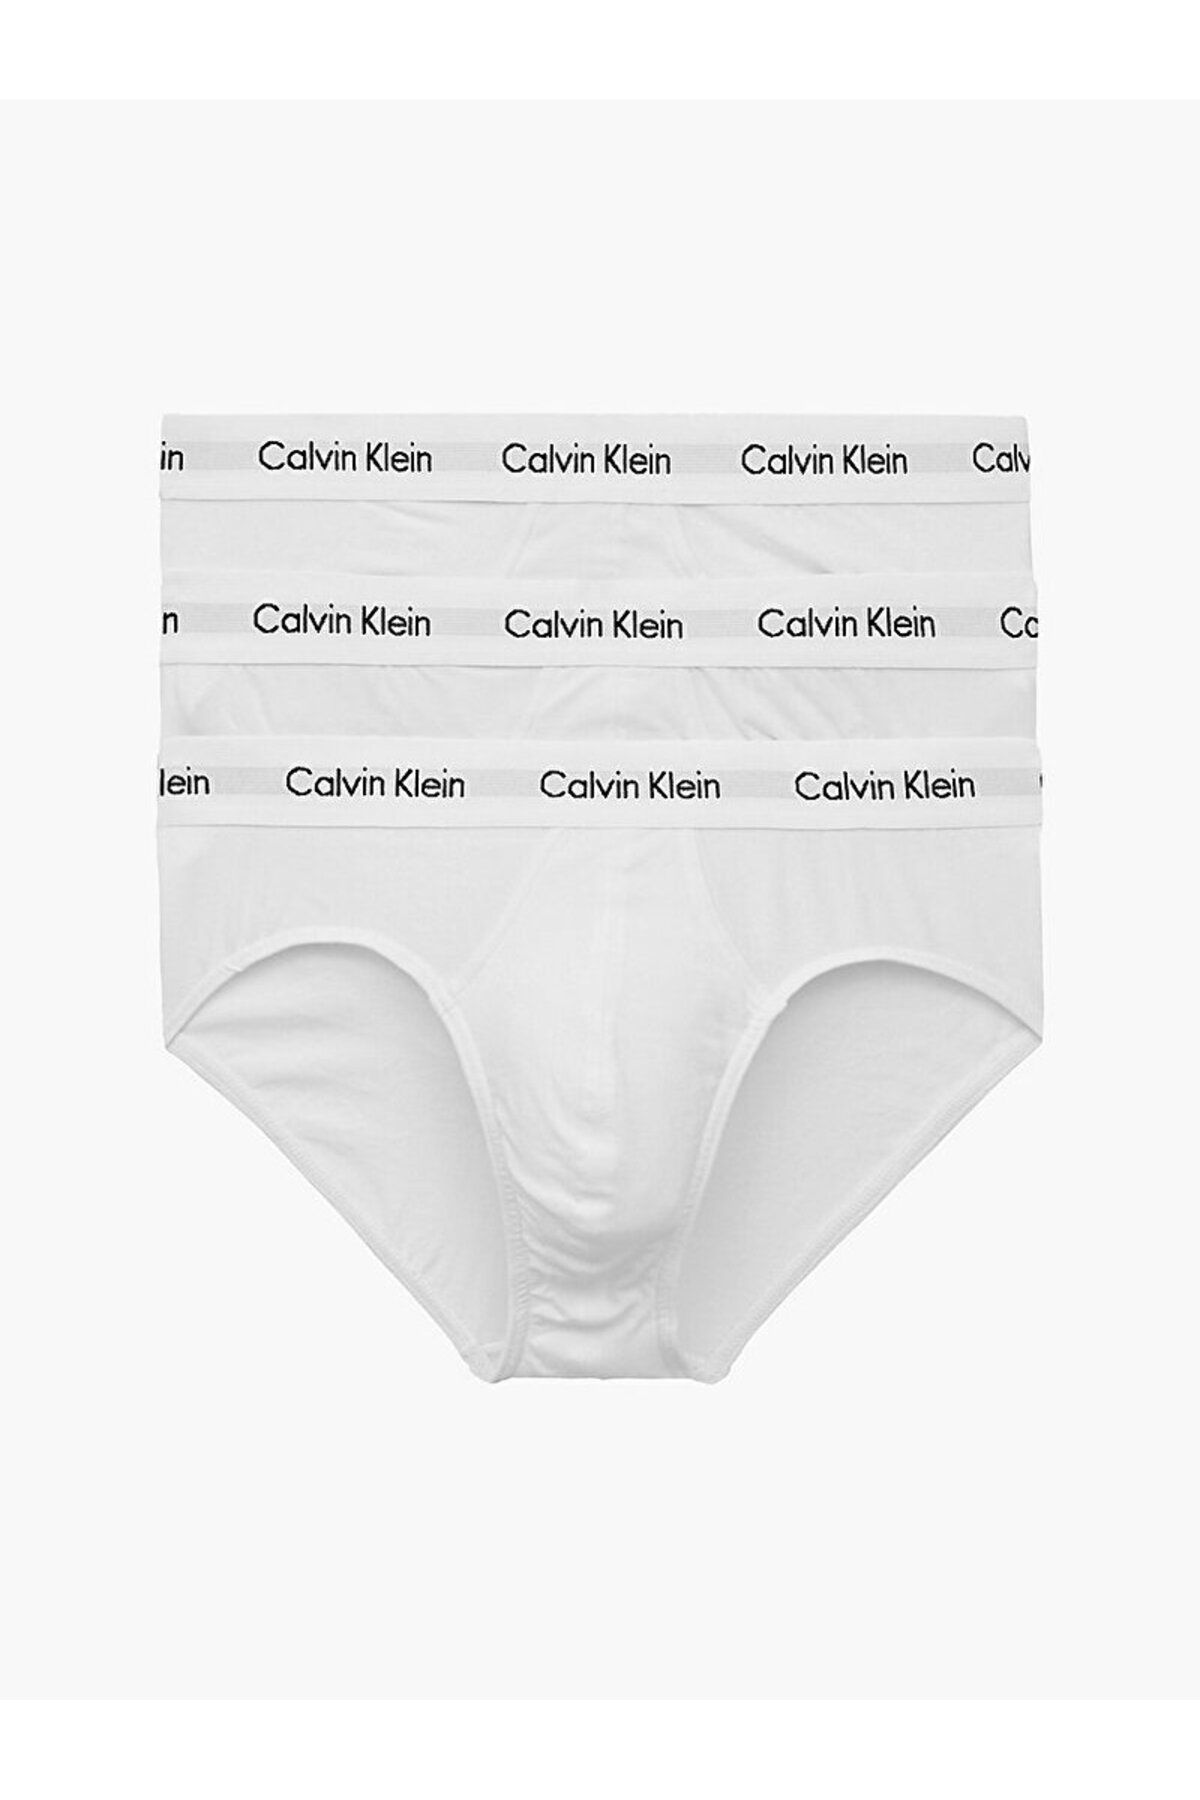 Calvin Klein Erkek Marka Logolu Elastik Bantlı Günlük Kullanıma Uygun Beyaz Boxer 0000u2661g-100